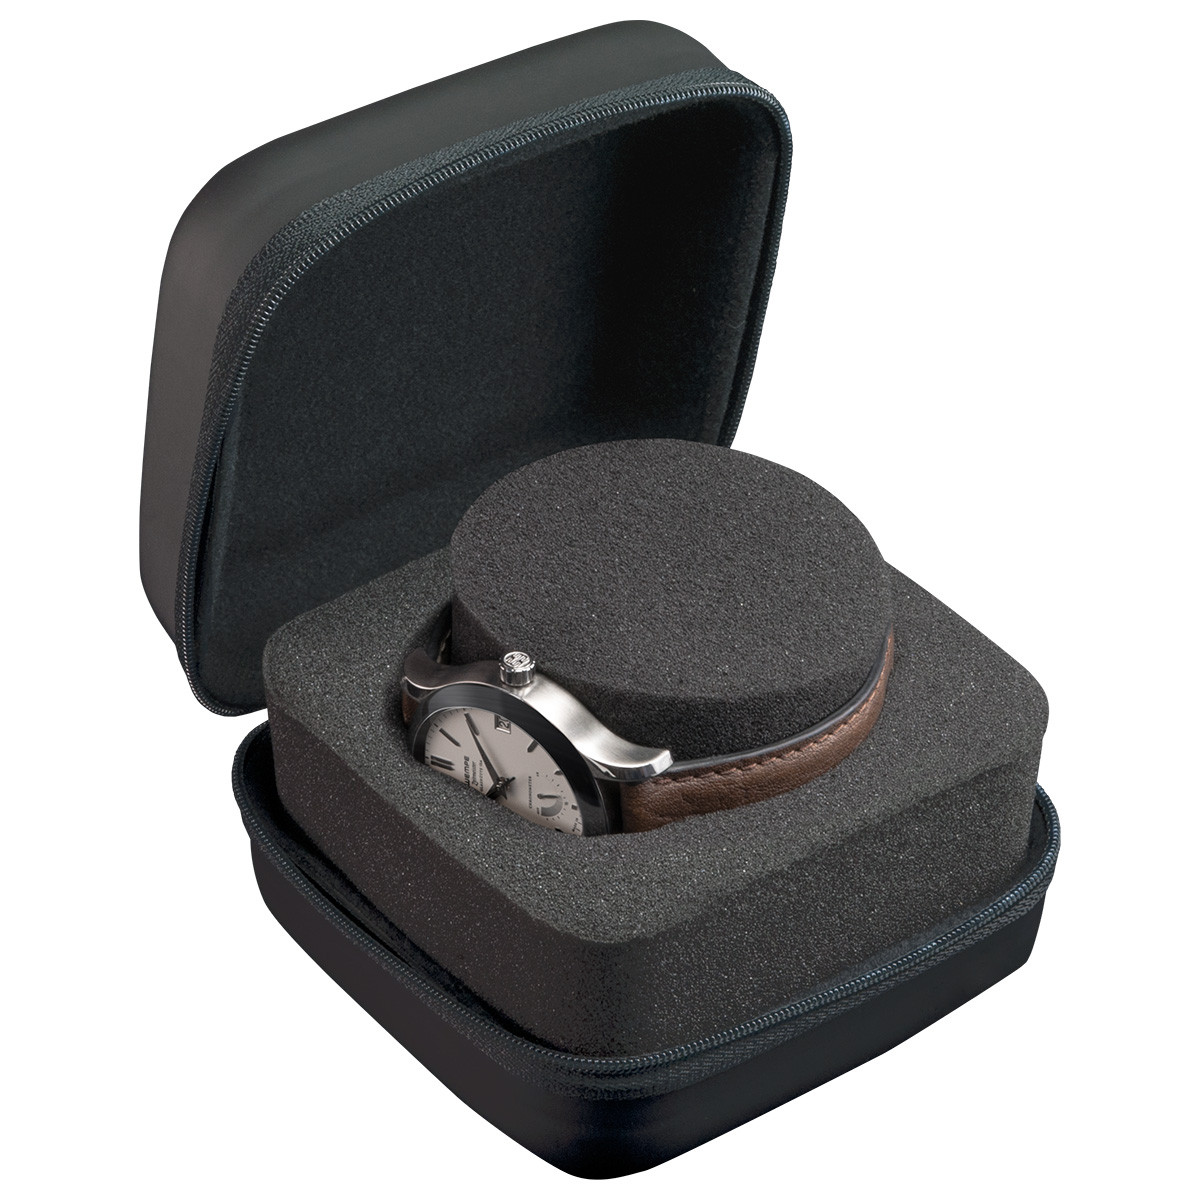 Watch Box ProtectMax étui robuste pour les grandes montres, coque dure, en matière plastique noire mate